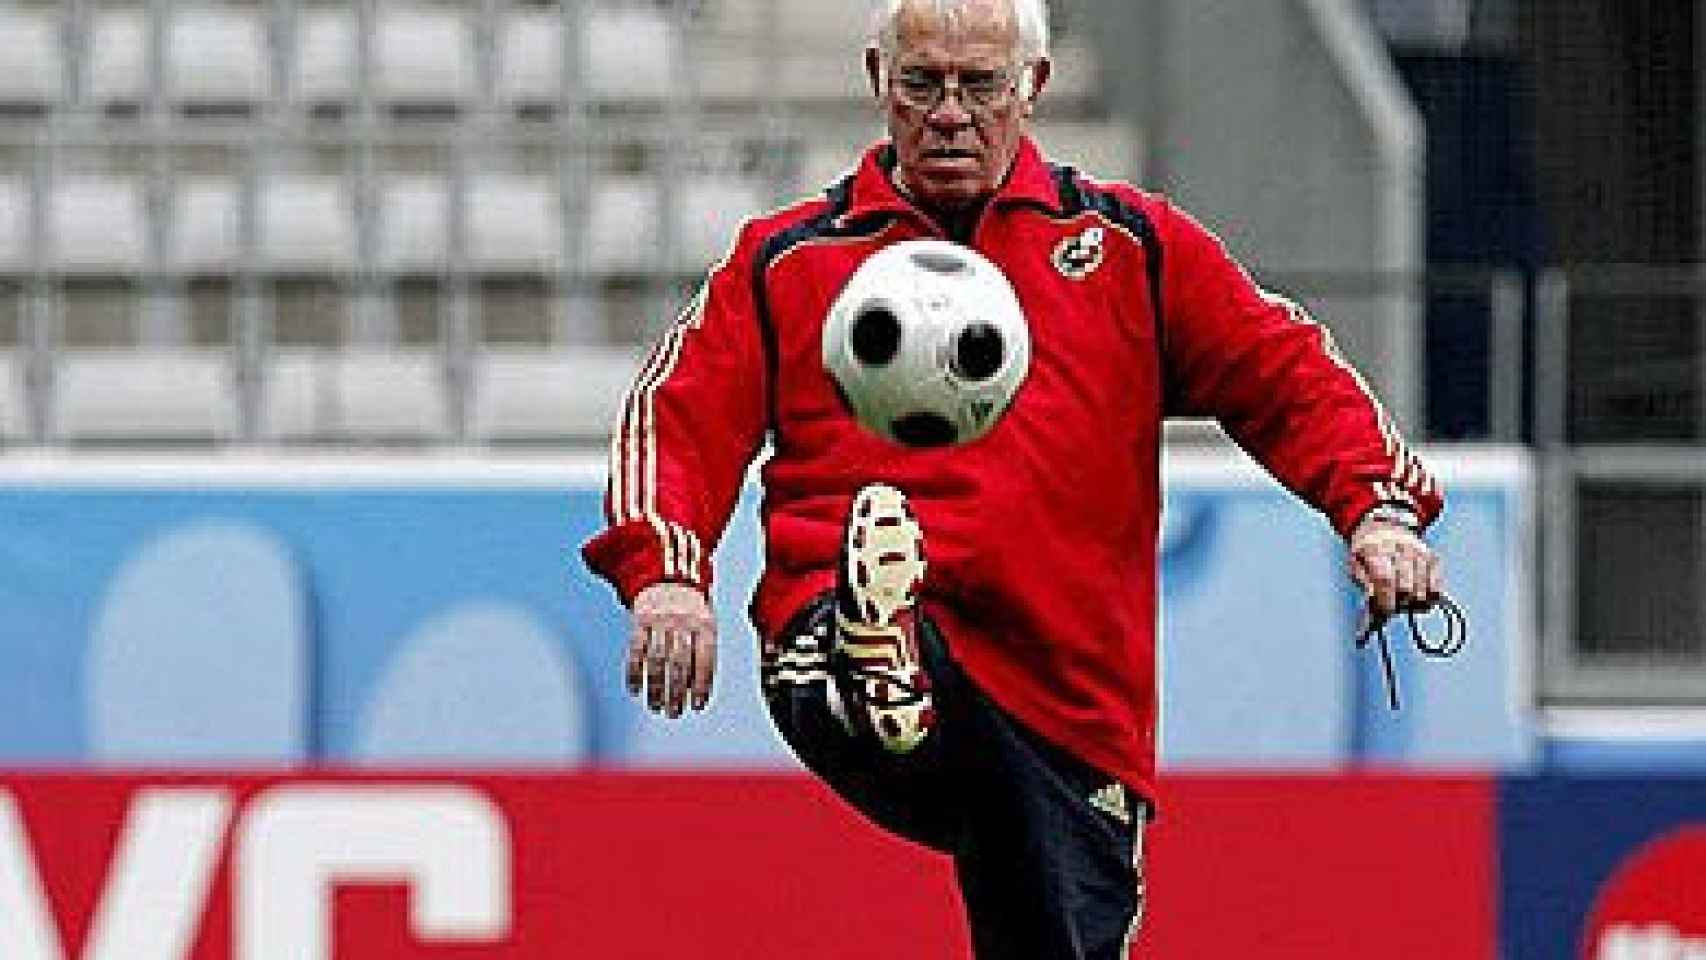 El ex jugador y ex entrenador de fútbol Luis Aragonés